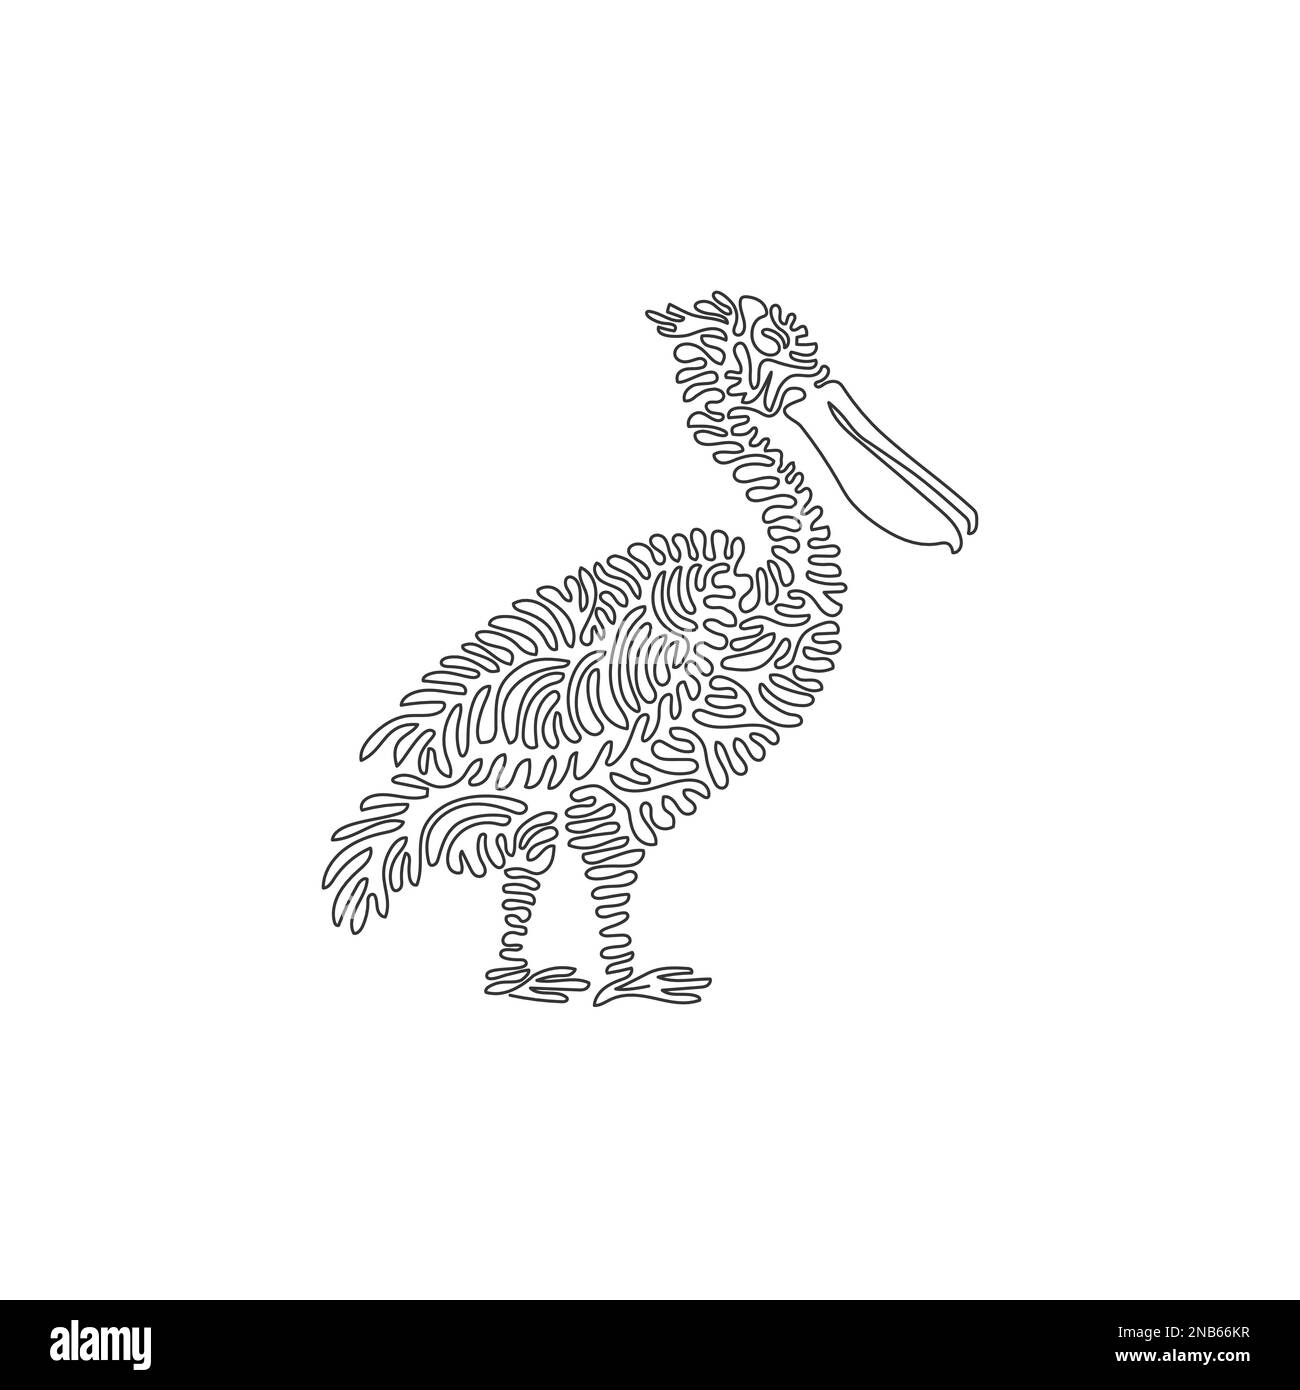 Durchgehende Kurve eine Linienzeichnung eines wunderschönen stehenden Pelikans. Einzeilige editierbare Schlagvektordarstellung pelikanischer grosser Wasservögel Stock Vektor